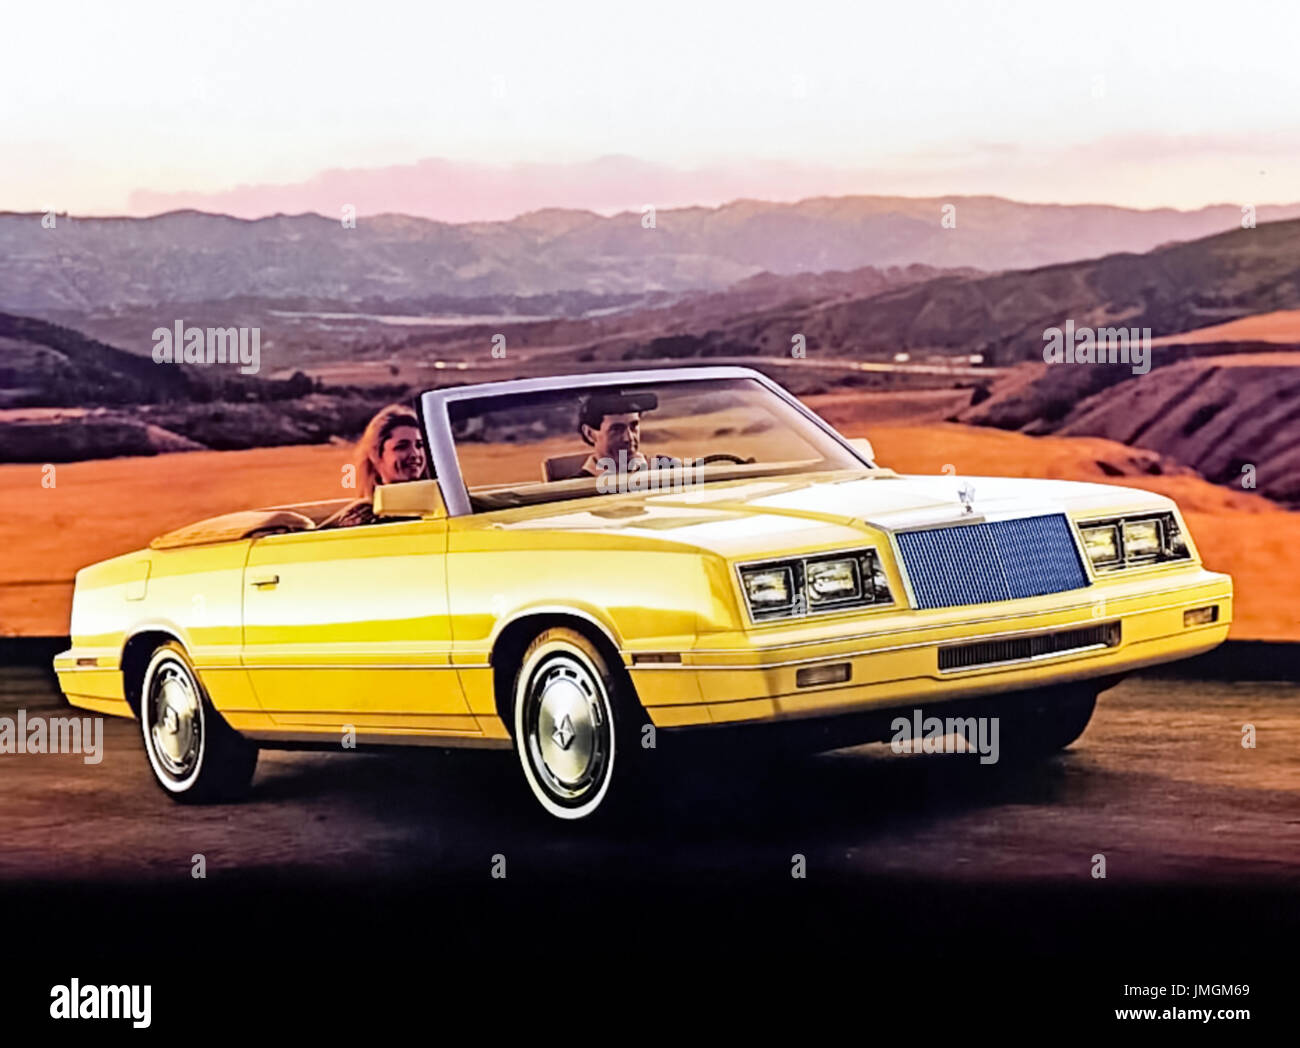 1982 Chrysler Le Baron décapotable montré à Manille avec crème 2,2 litre moteur à arbre à cames en tête. Photographie de l'original 1982 brochure de vente. Banque D'Images